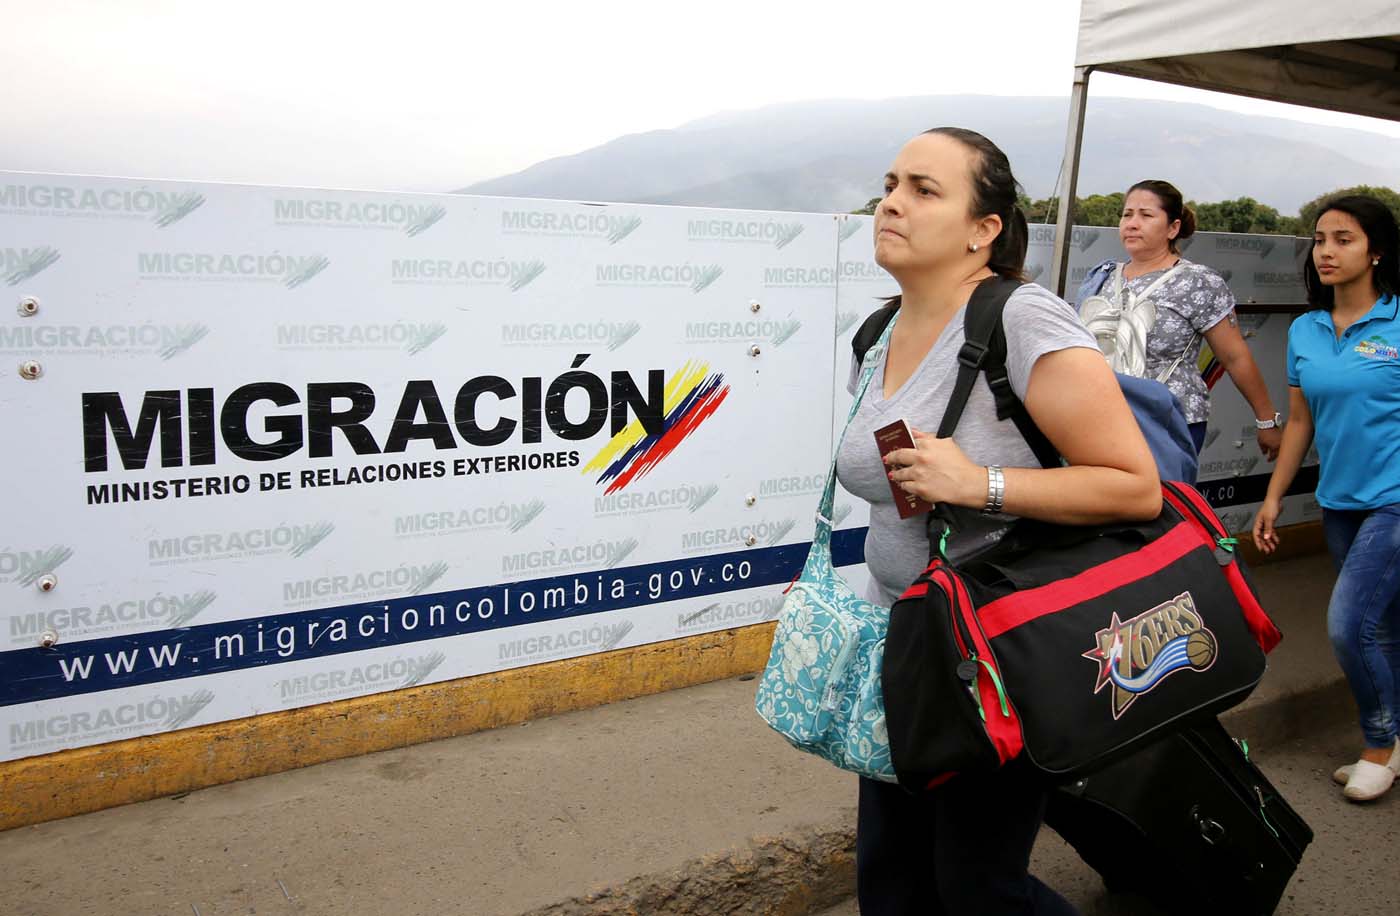 Migración Colombia: Venezolanos con Tarjeta de Movilidad Fronteriza pueden pasar la frontera (Video)